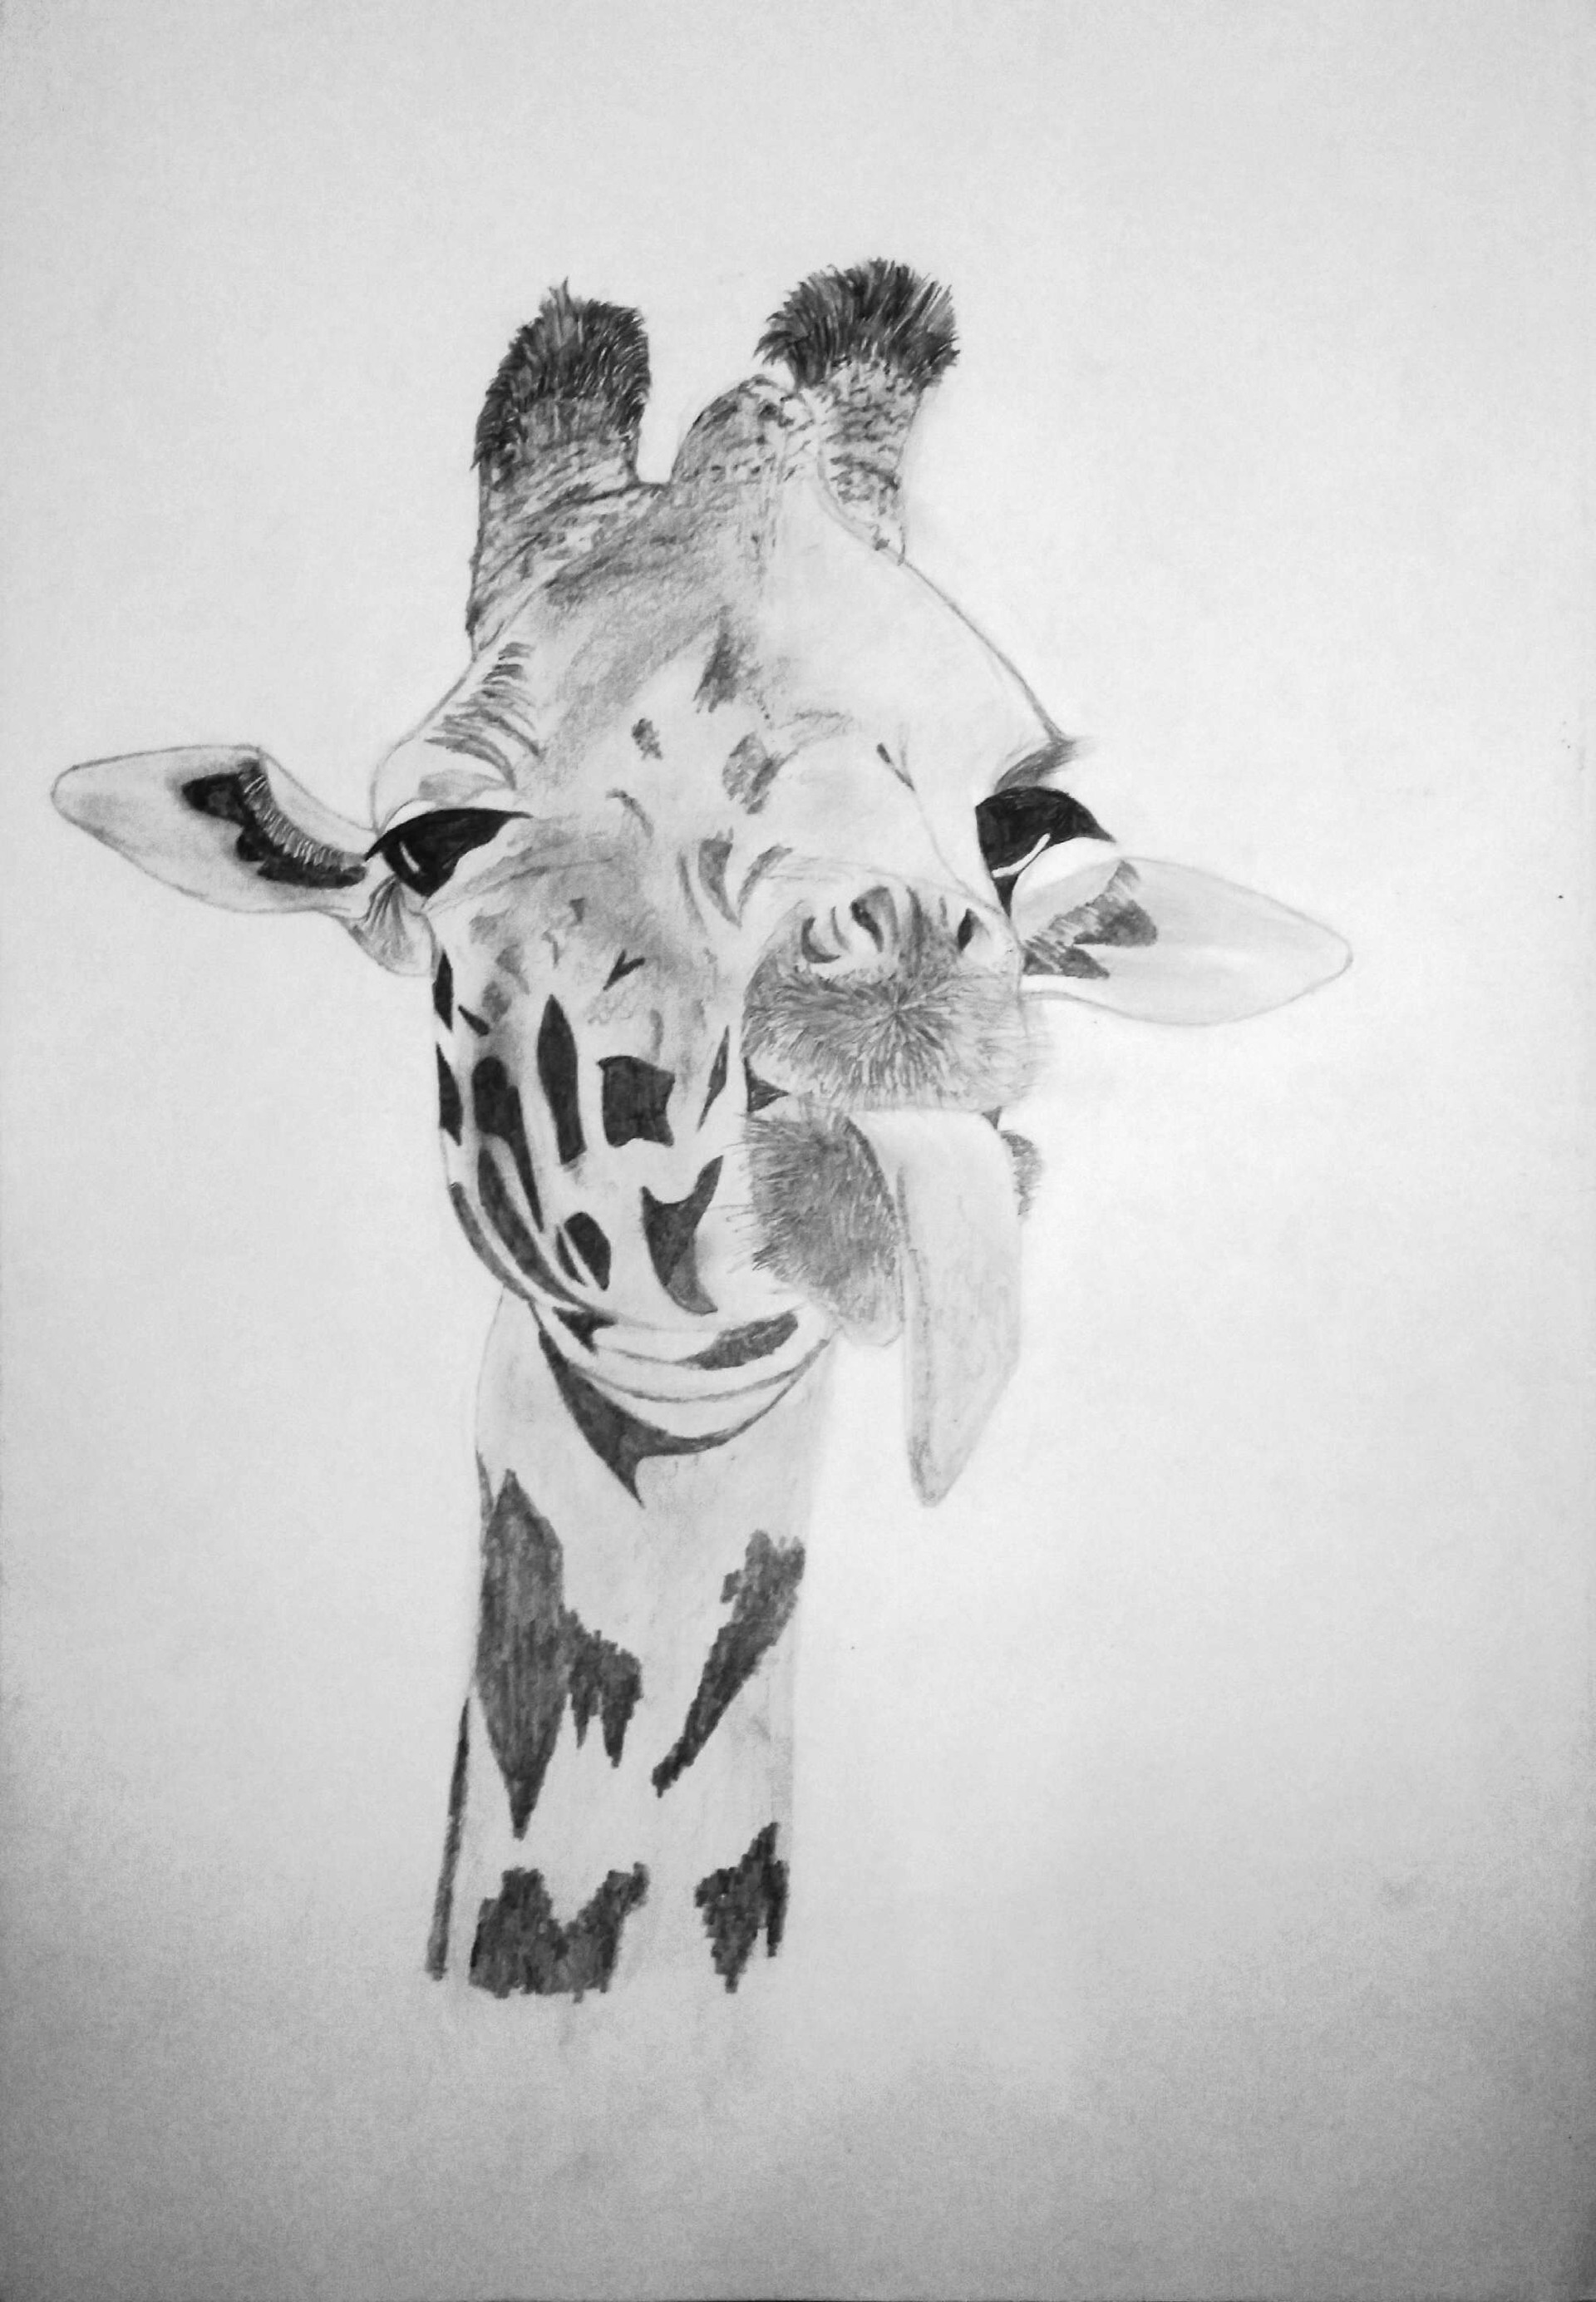 ArtStation - Giraffe Sketch